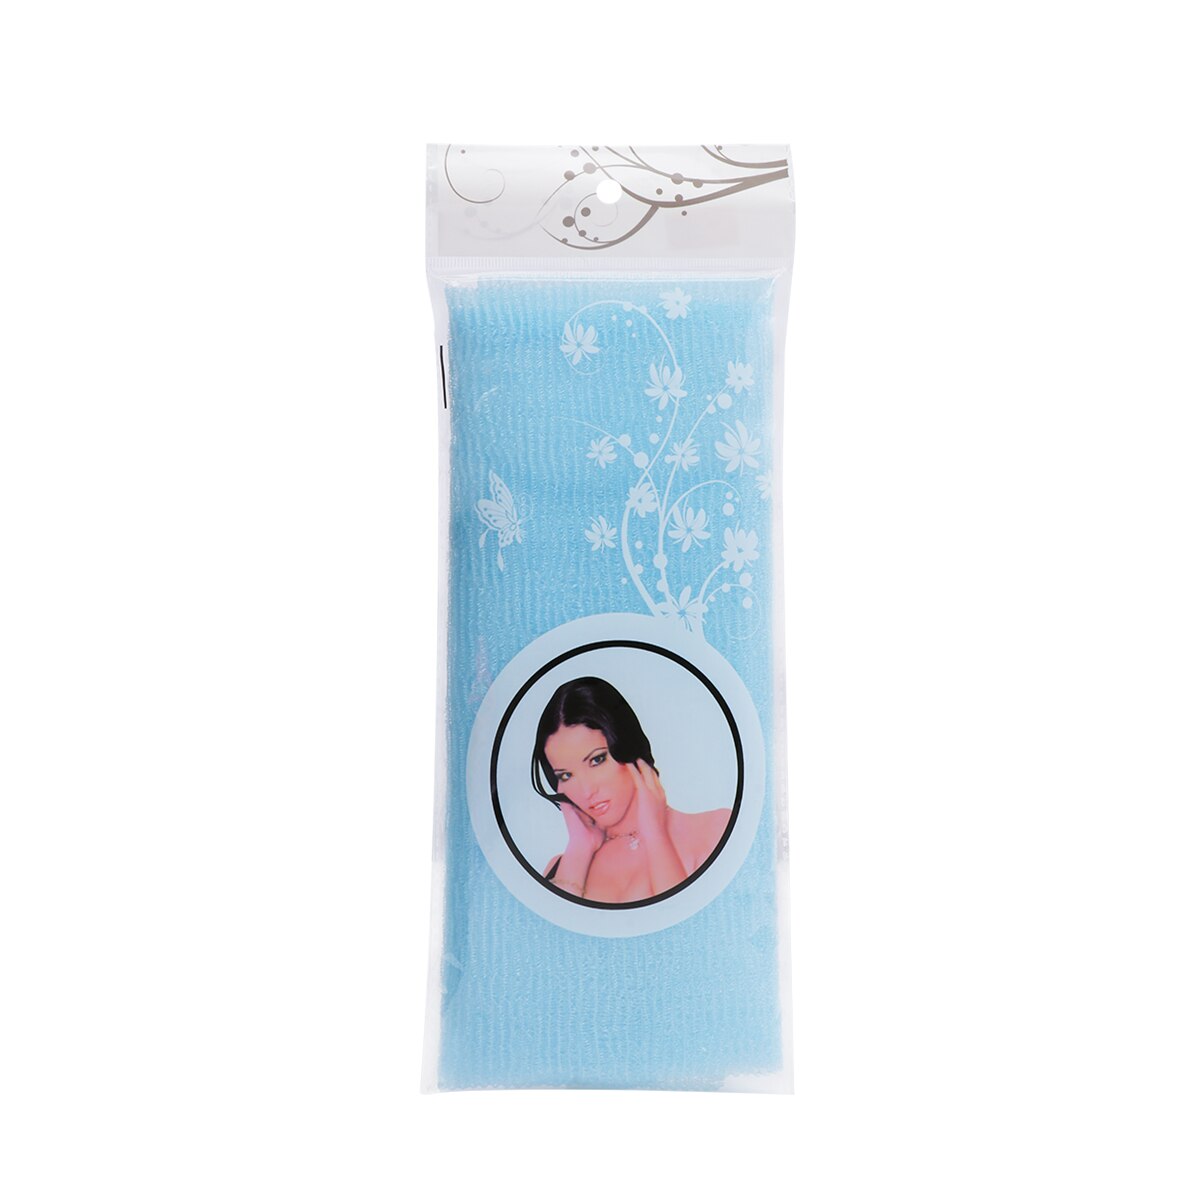 Skønhed hud badehåndklæde lang eksfolierende nylon badehåndklæde, magisk brusebad vaskeklud til krop , 35 inches  (5 farver)